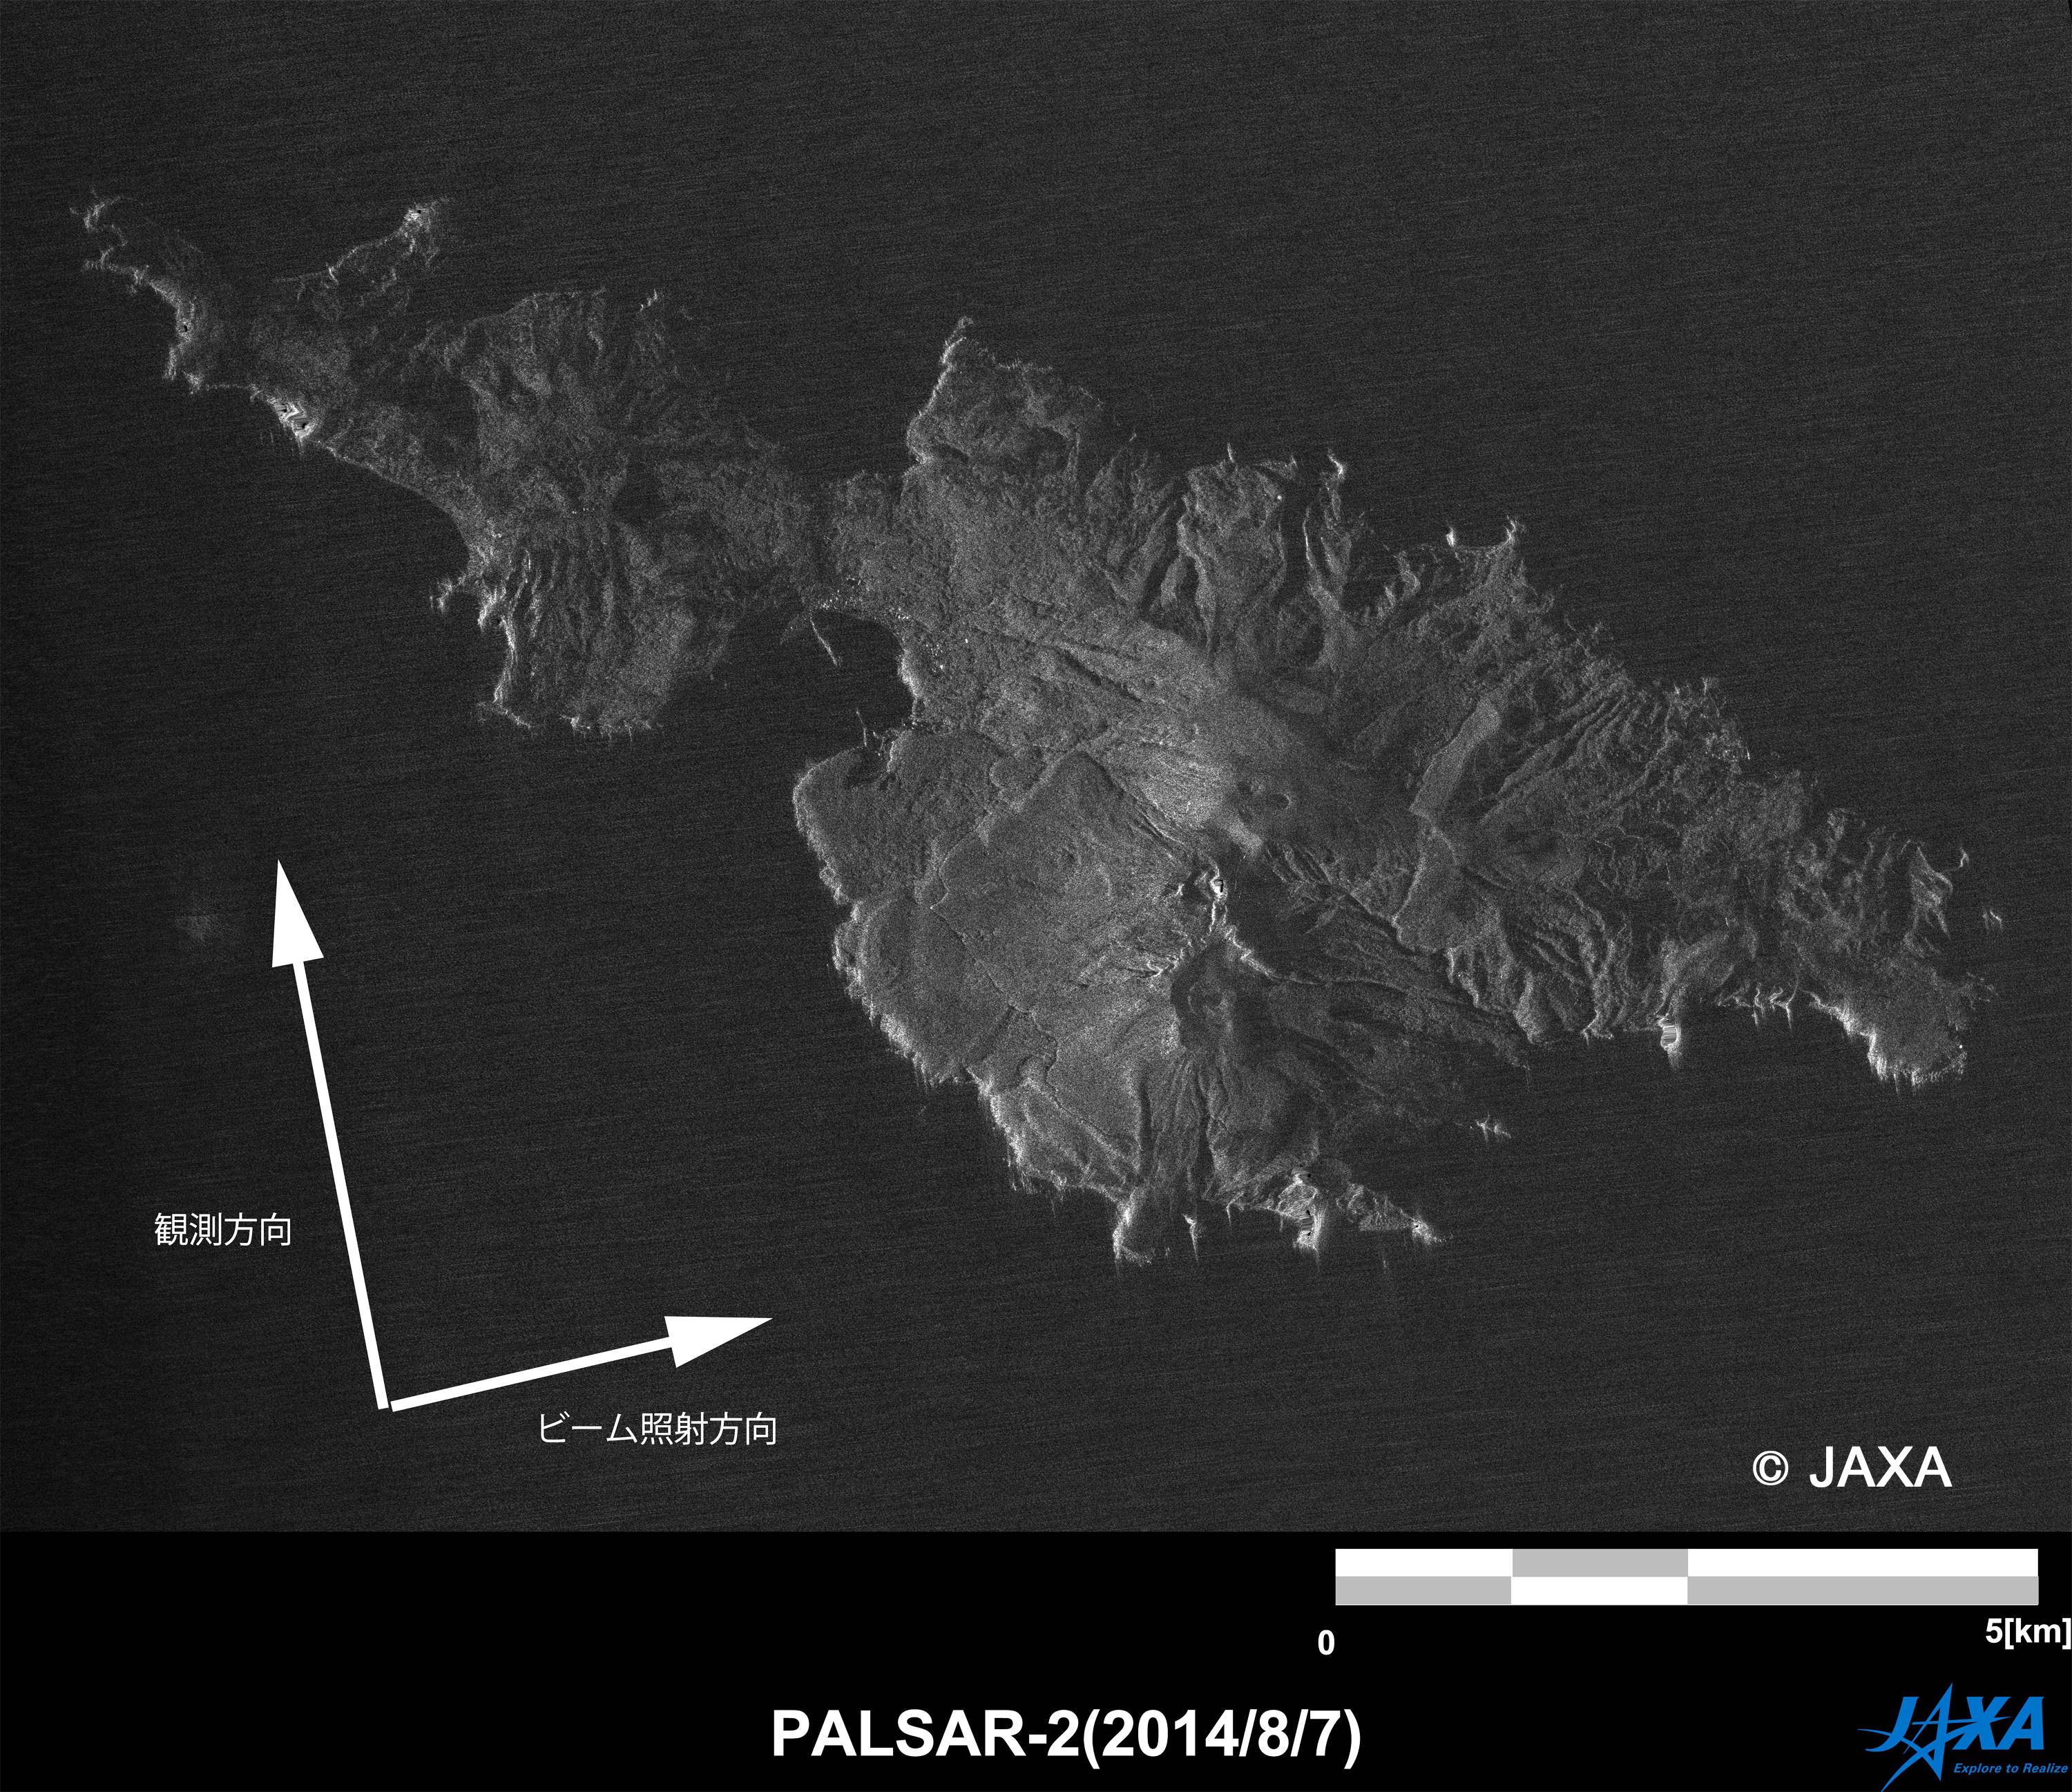 図2: 口永良部島の火山噴火後画像 